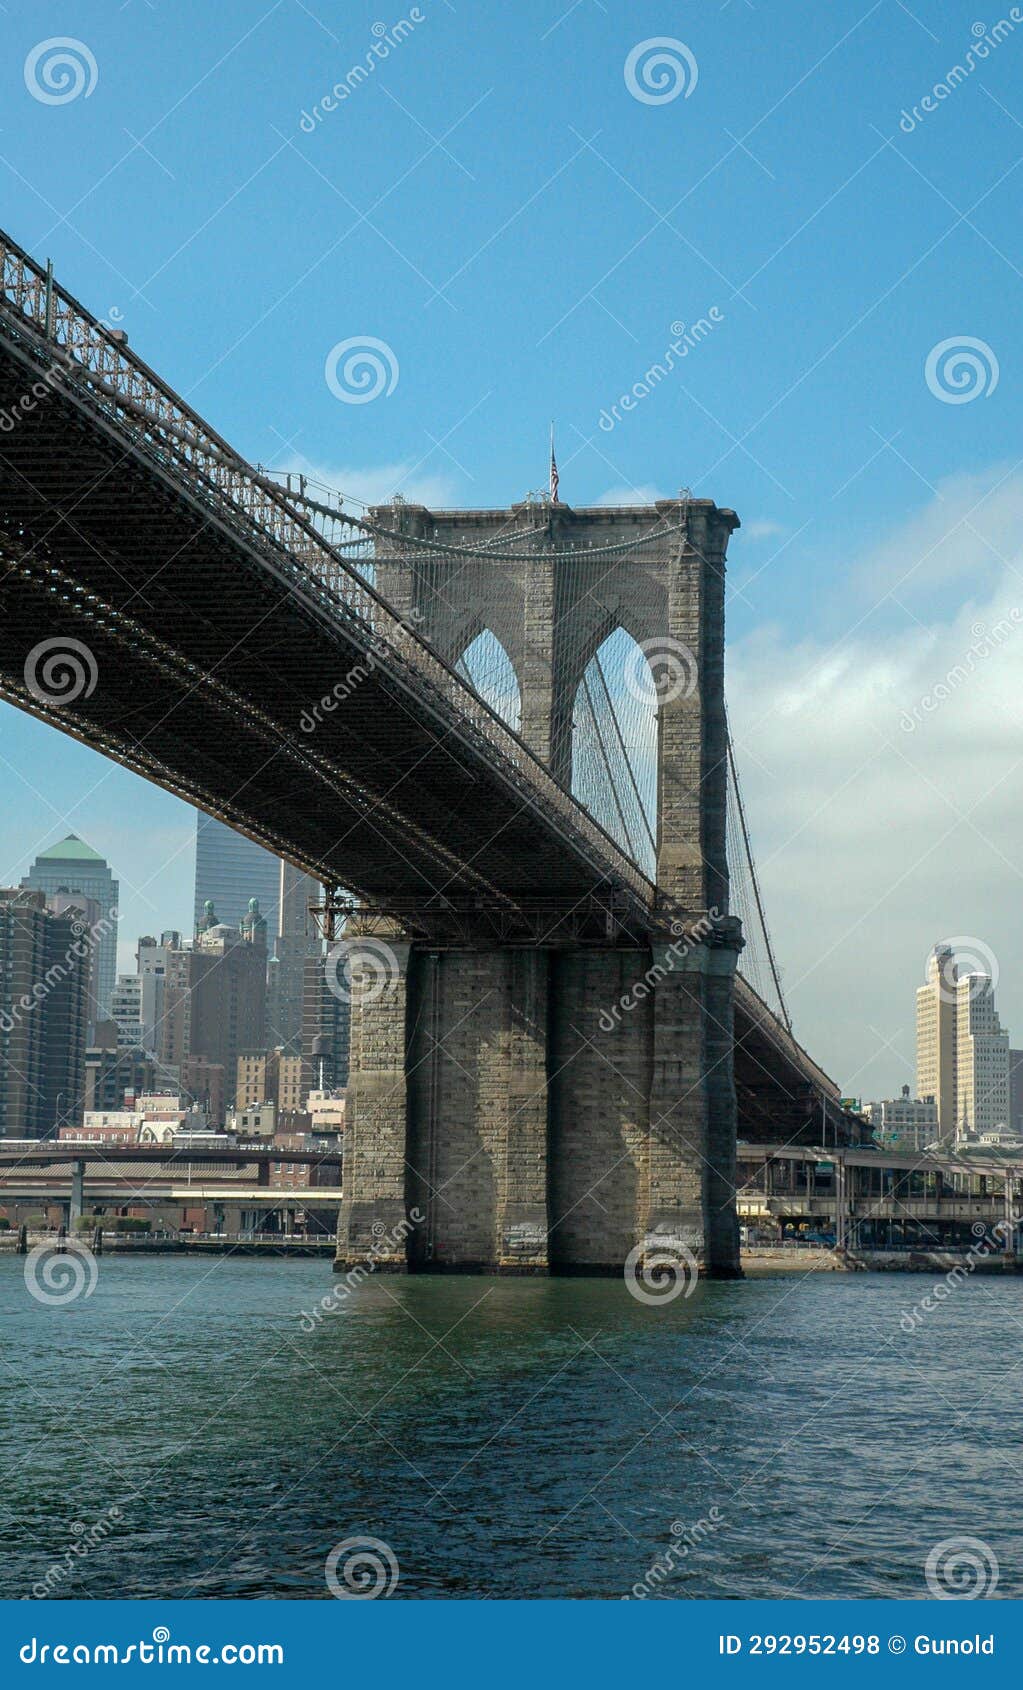 New York, Brocklyn Bridge stock photo. Image of steel - 292952498